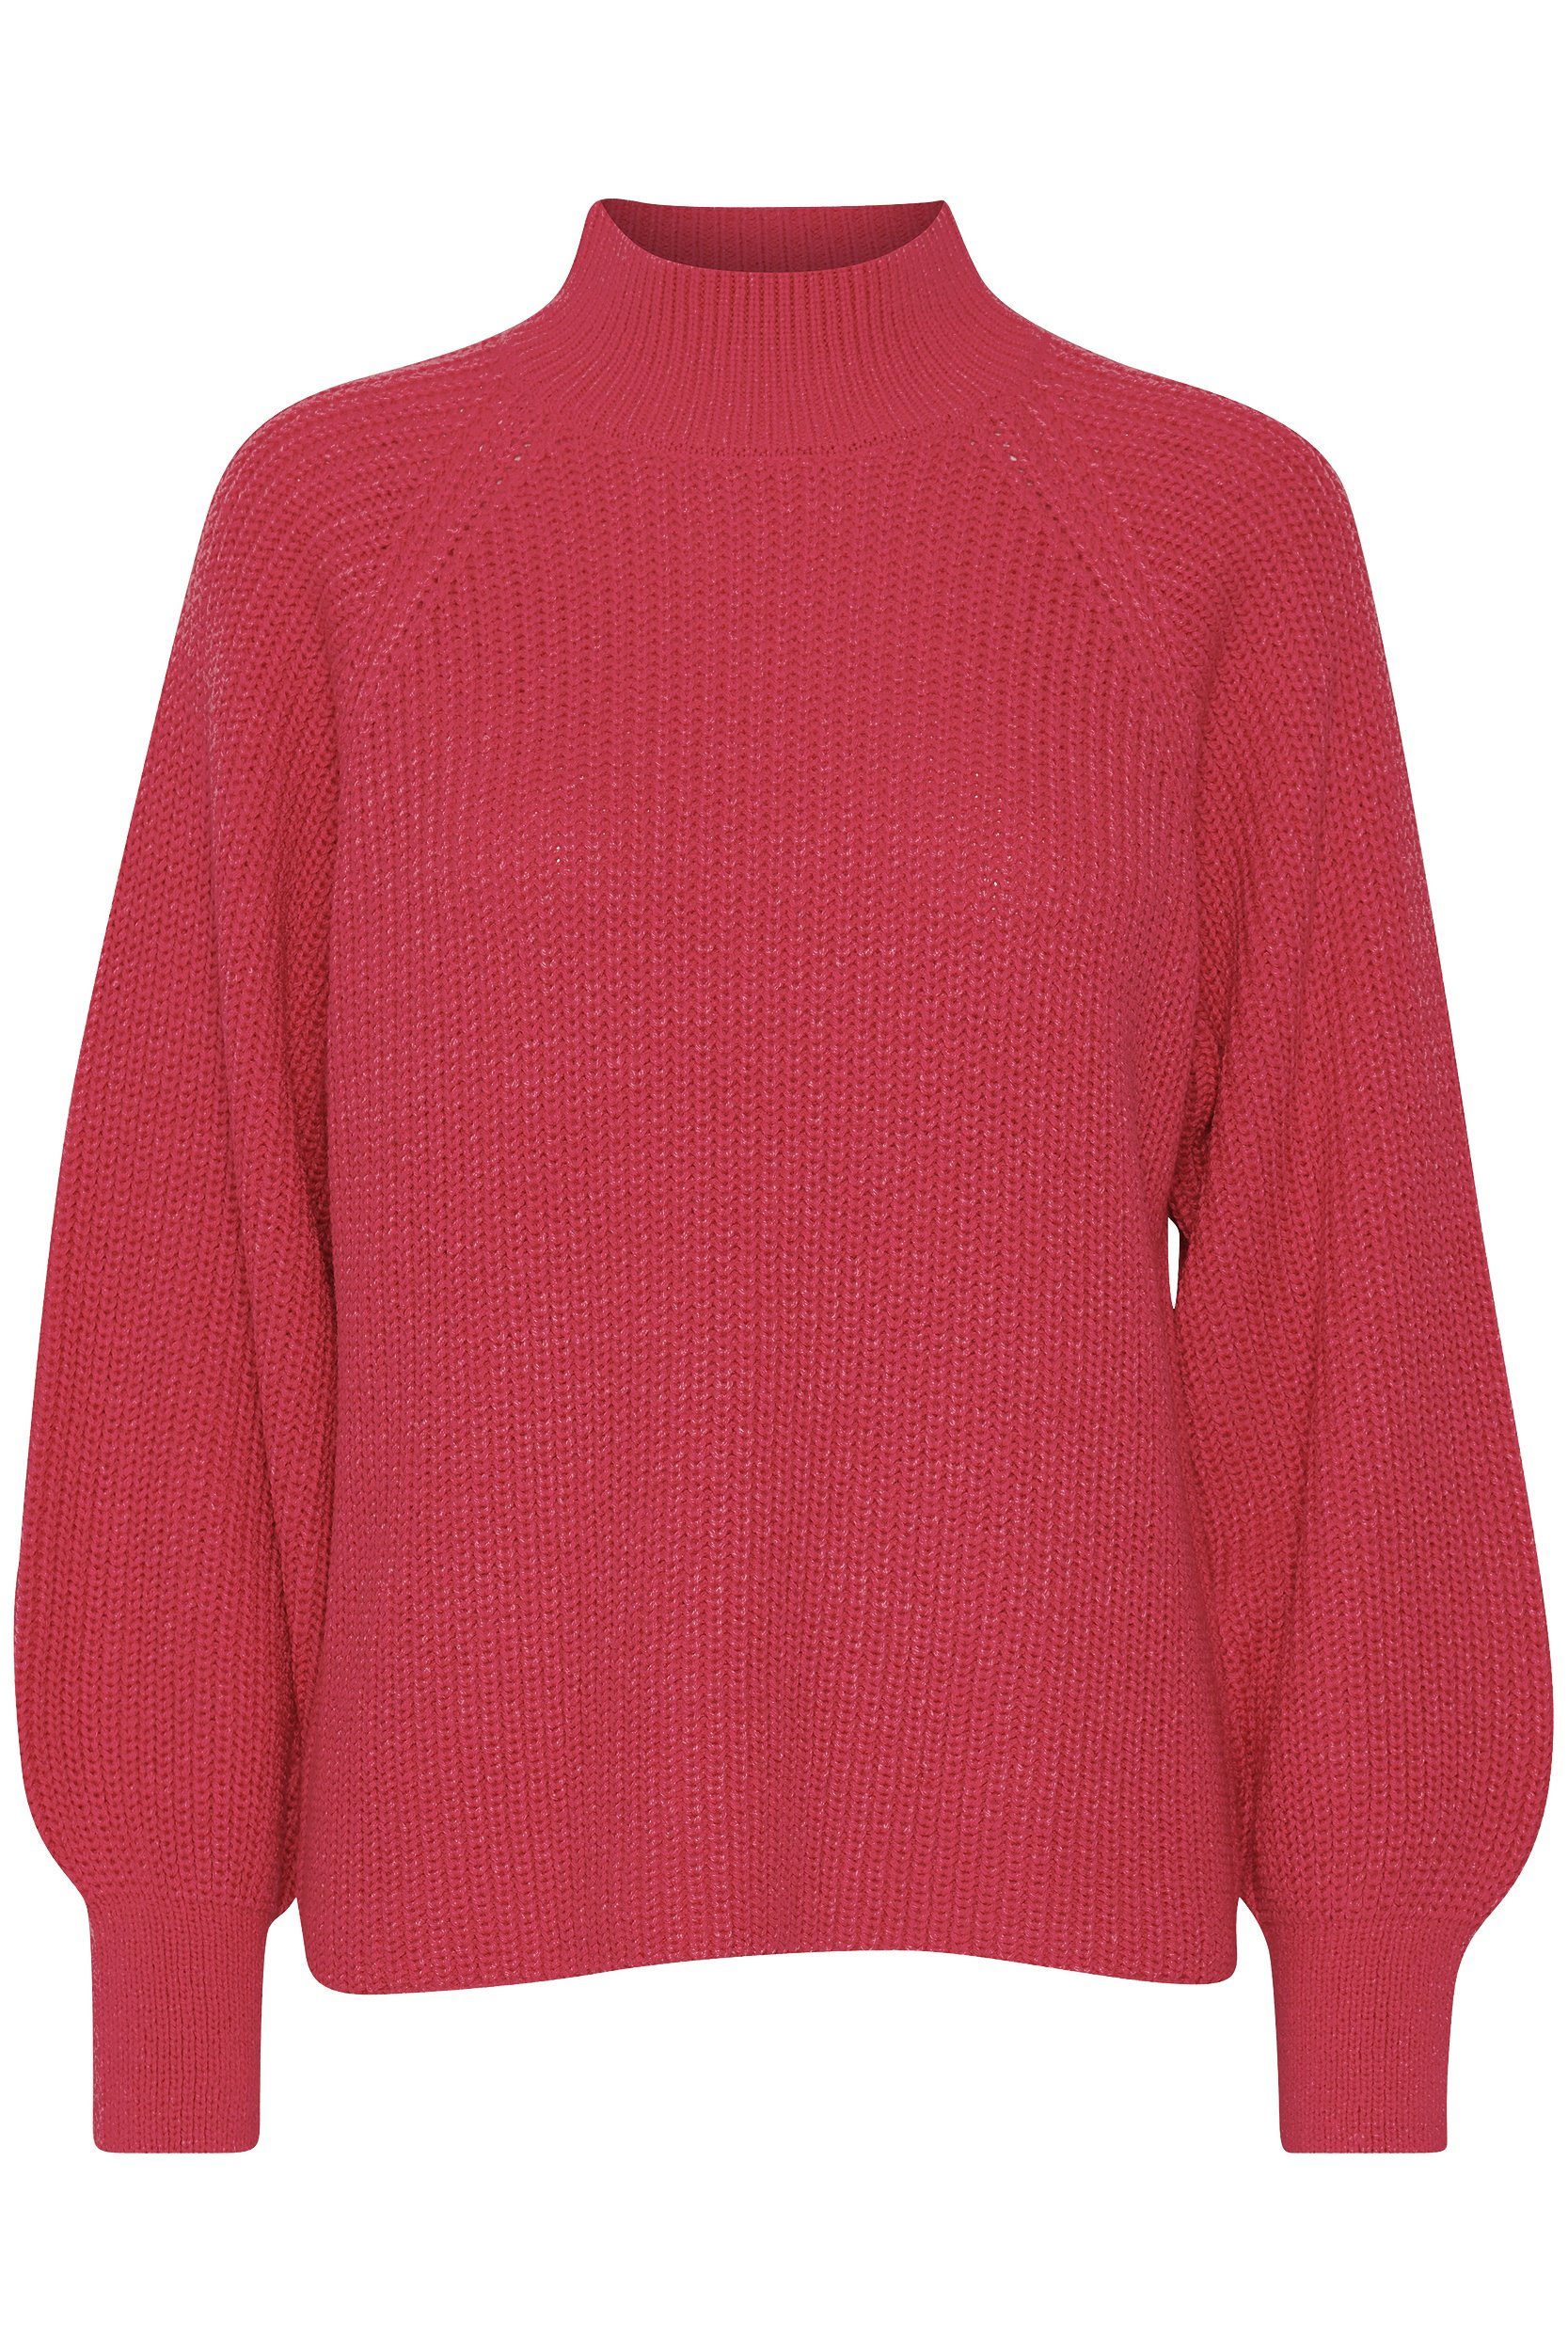 b.young Strickpullover Grobstrick Pullover mit Ballonärmeln Sweater mit Kragen 6692 in Rot